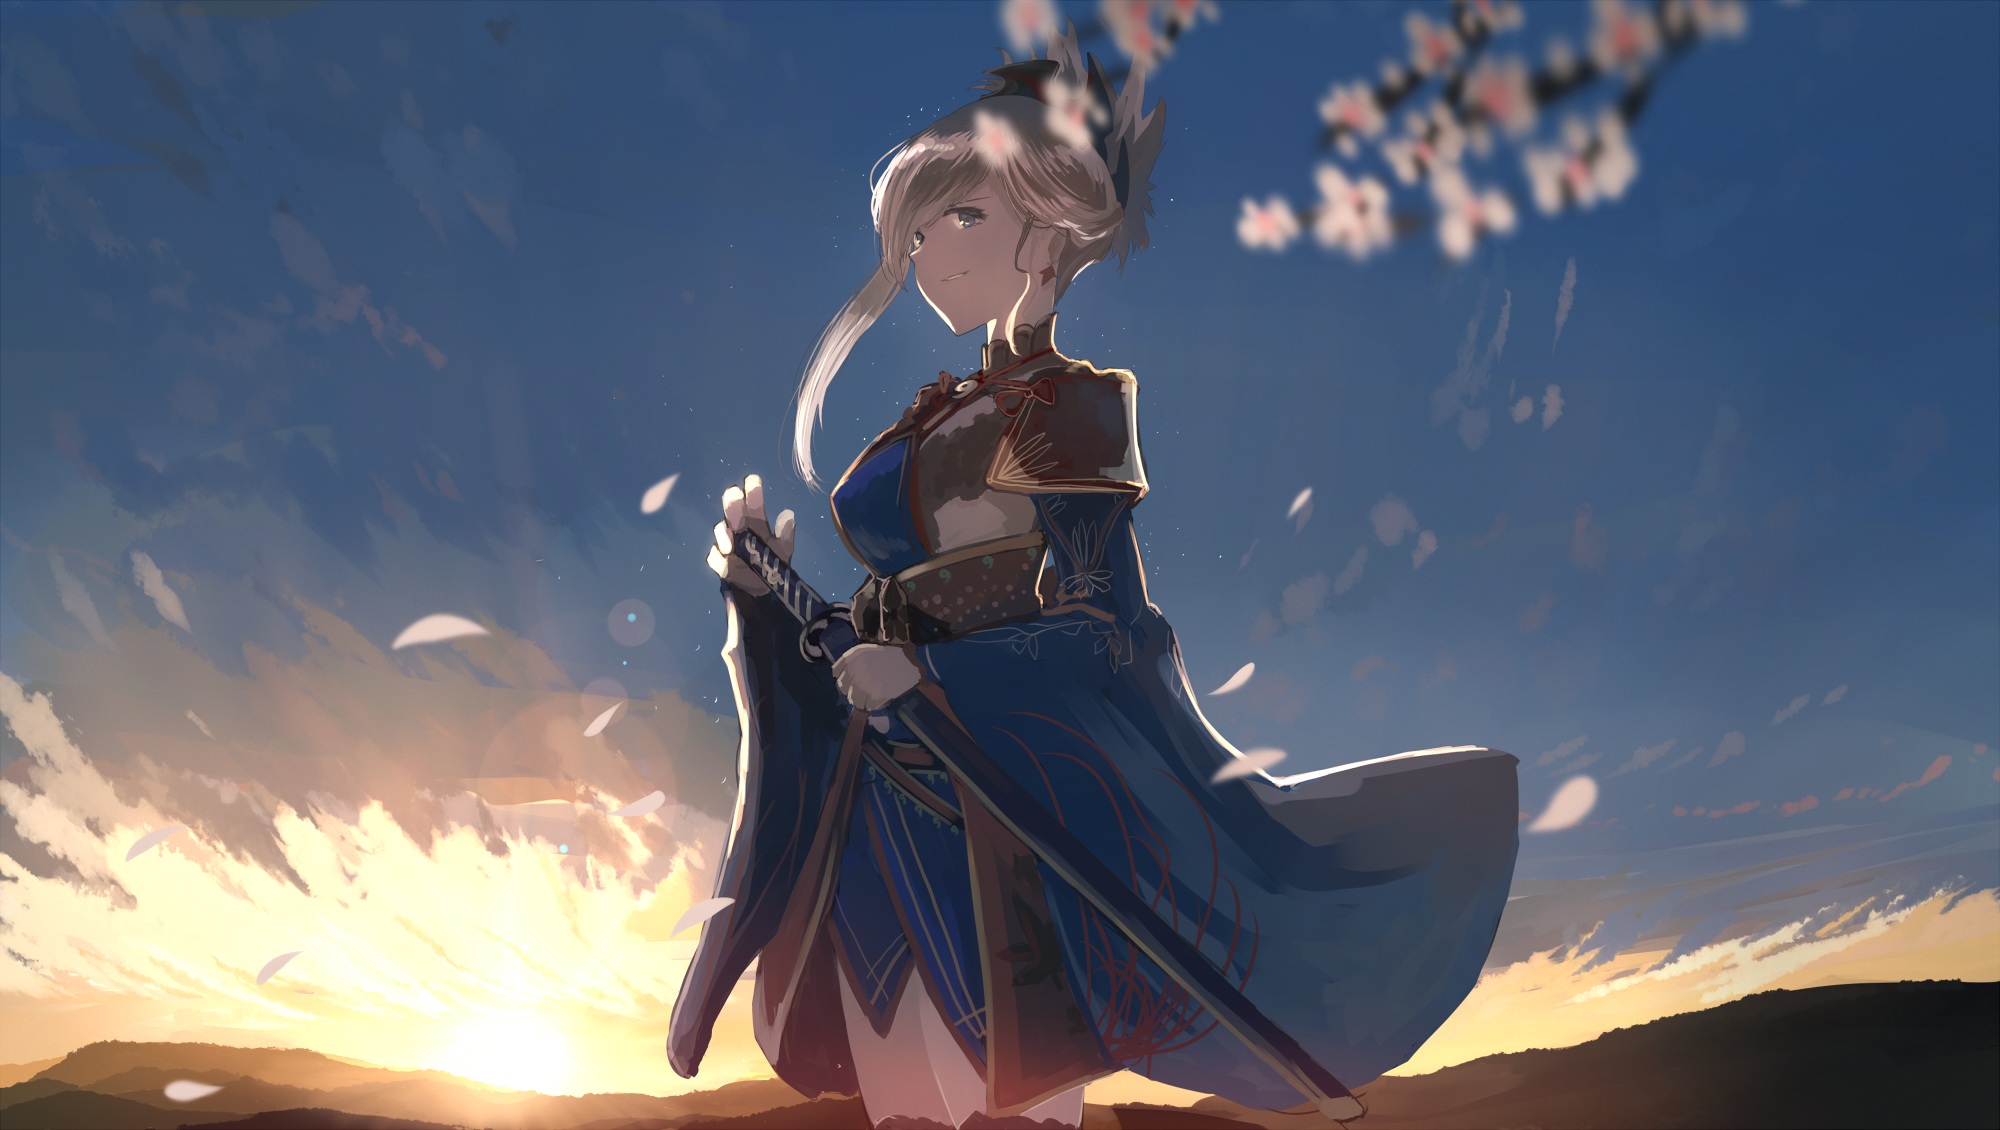 Blue Eyes Dress Fate Grand Order Girl Long Hair Miyamoto Musashi Ponytail Smile Sunset Sword Weapon  2000x1130